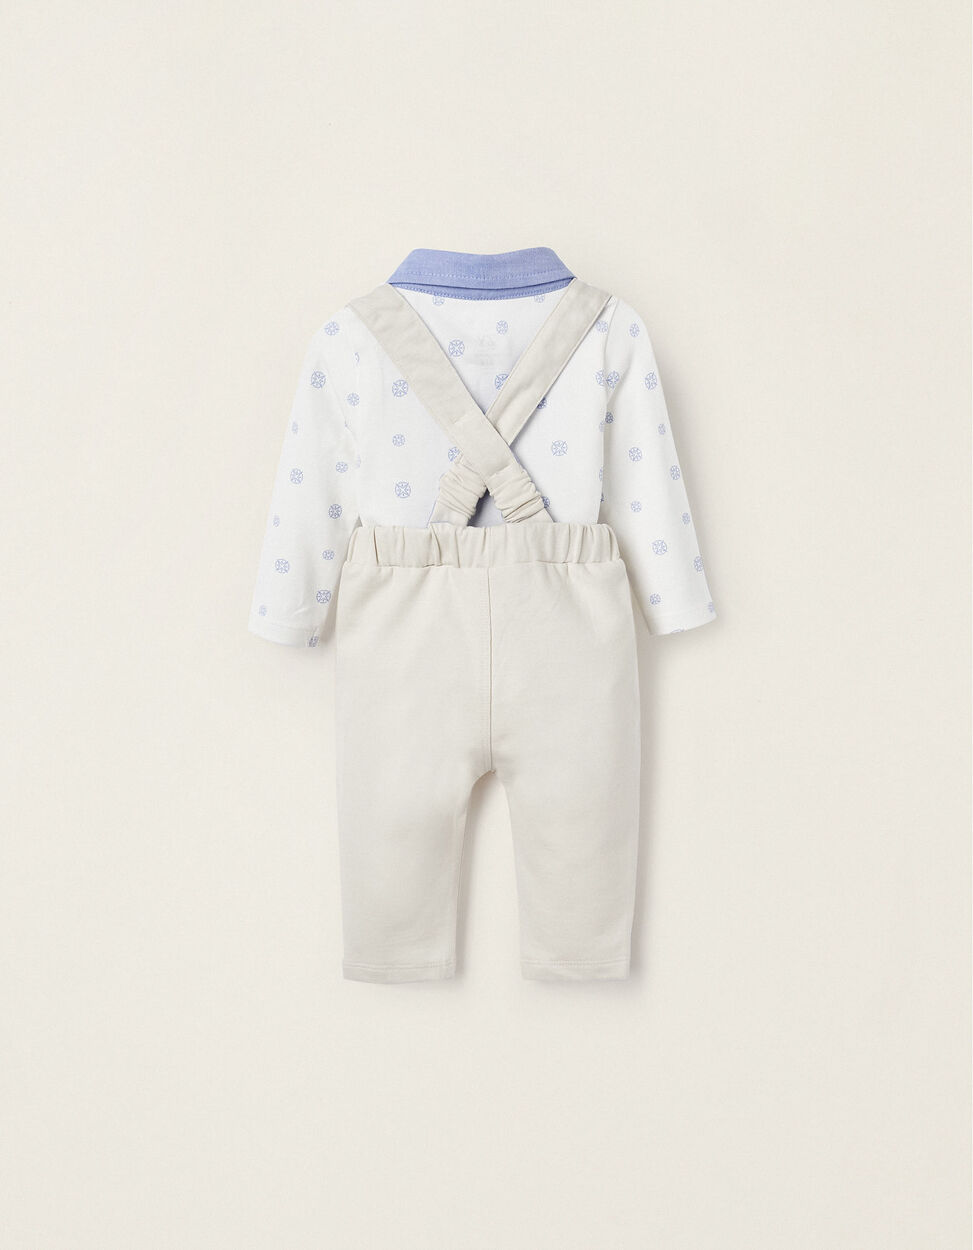 Comprar Online Body-Polo + Pantalones con Tirantes Desmontables para Recién Nacido, Blanco/Azul/Beige